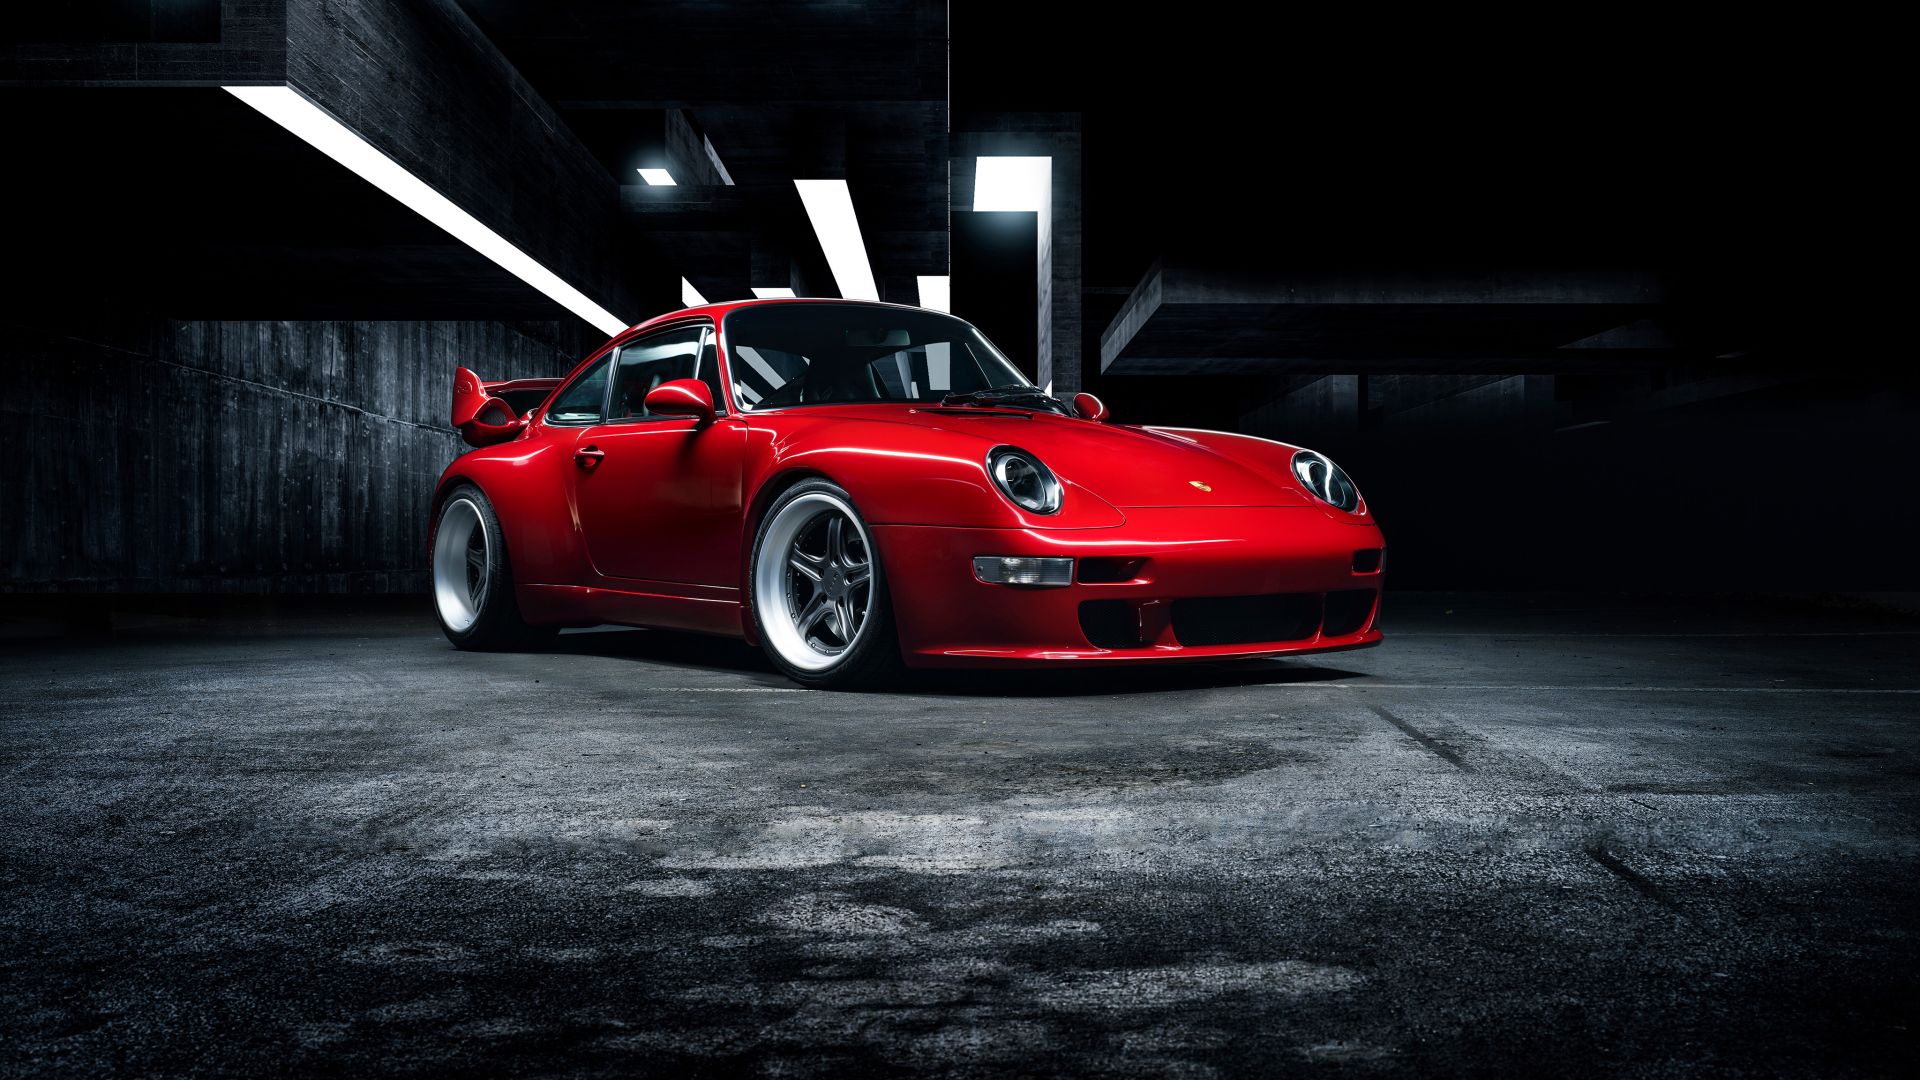 Wallpaper Porsche gunther werks 400r, red sports car, 4k